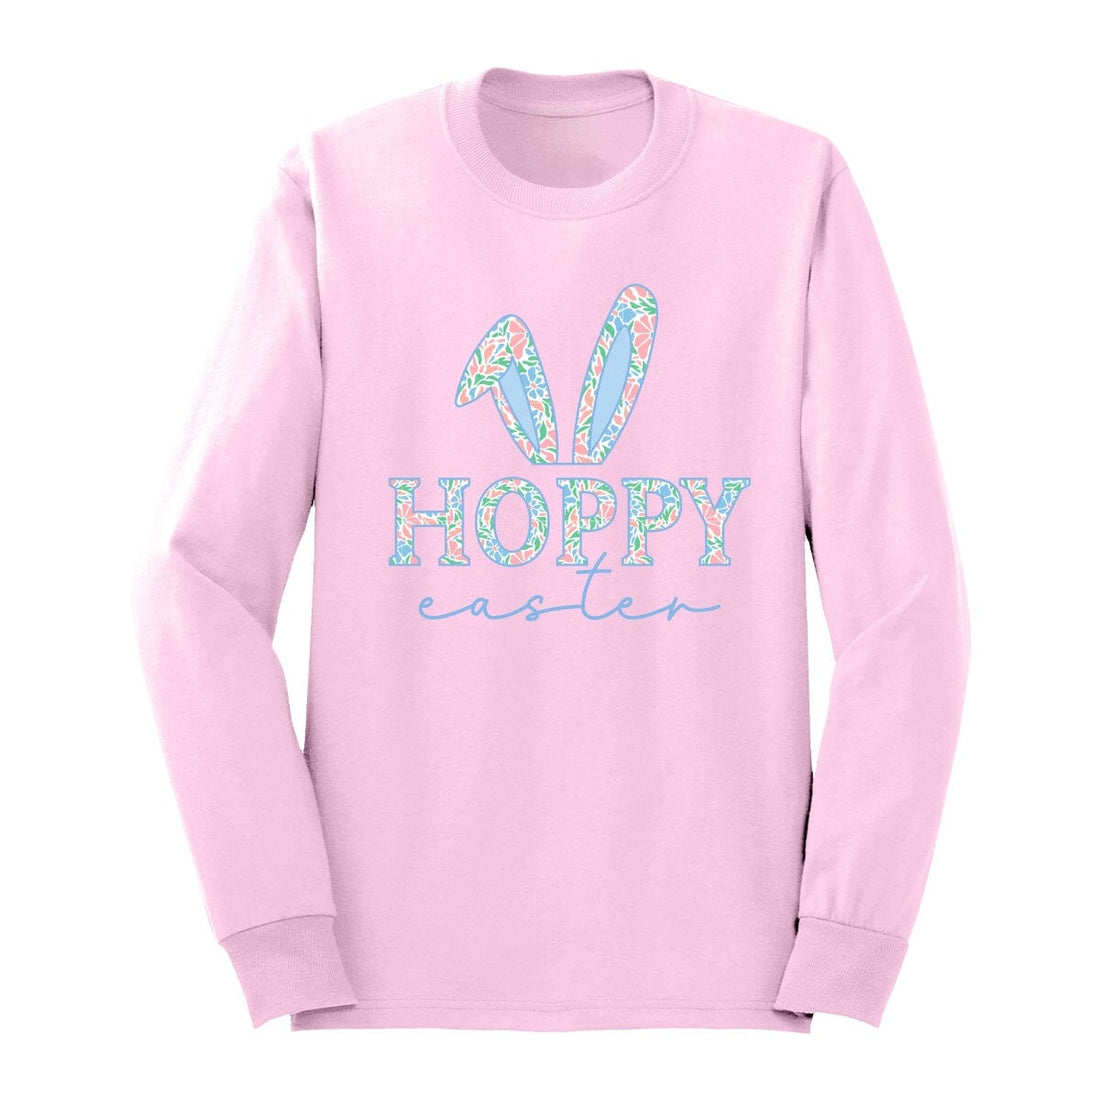 Hoppy Easter Long Sleeve Shirt